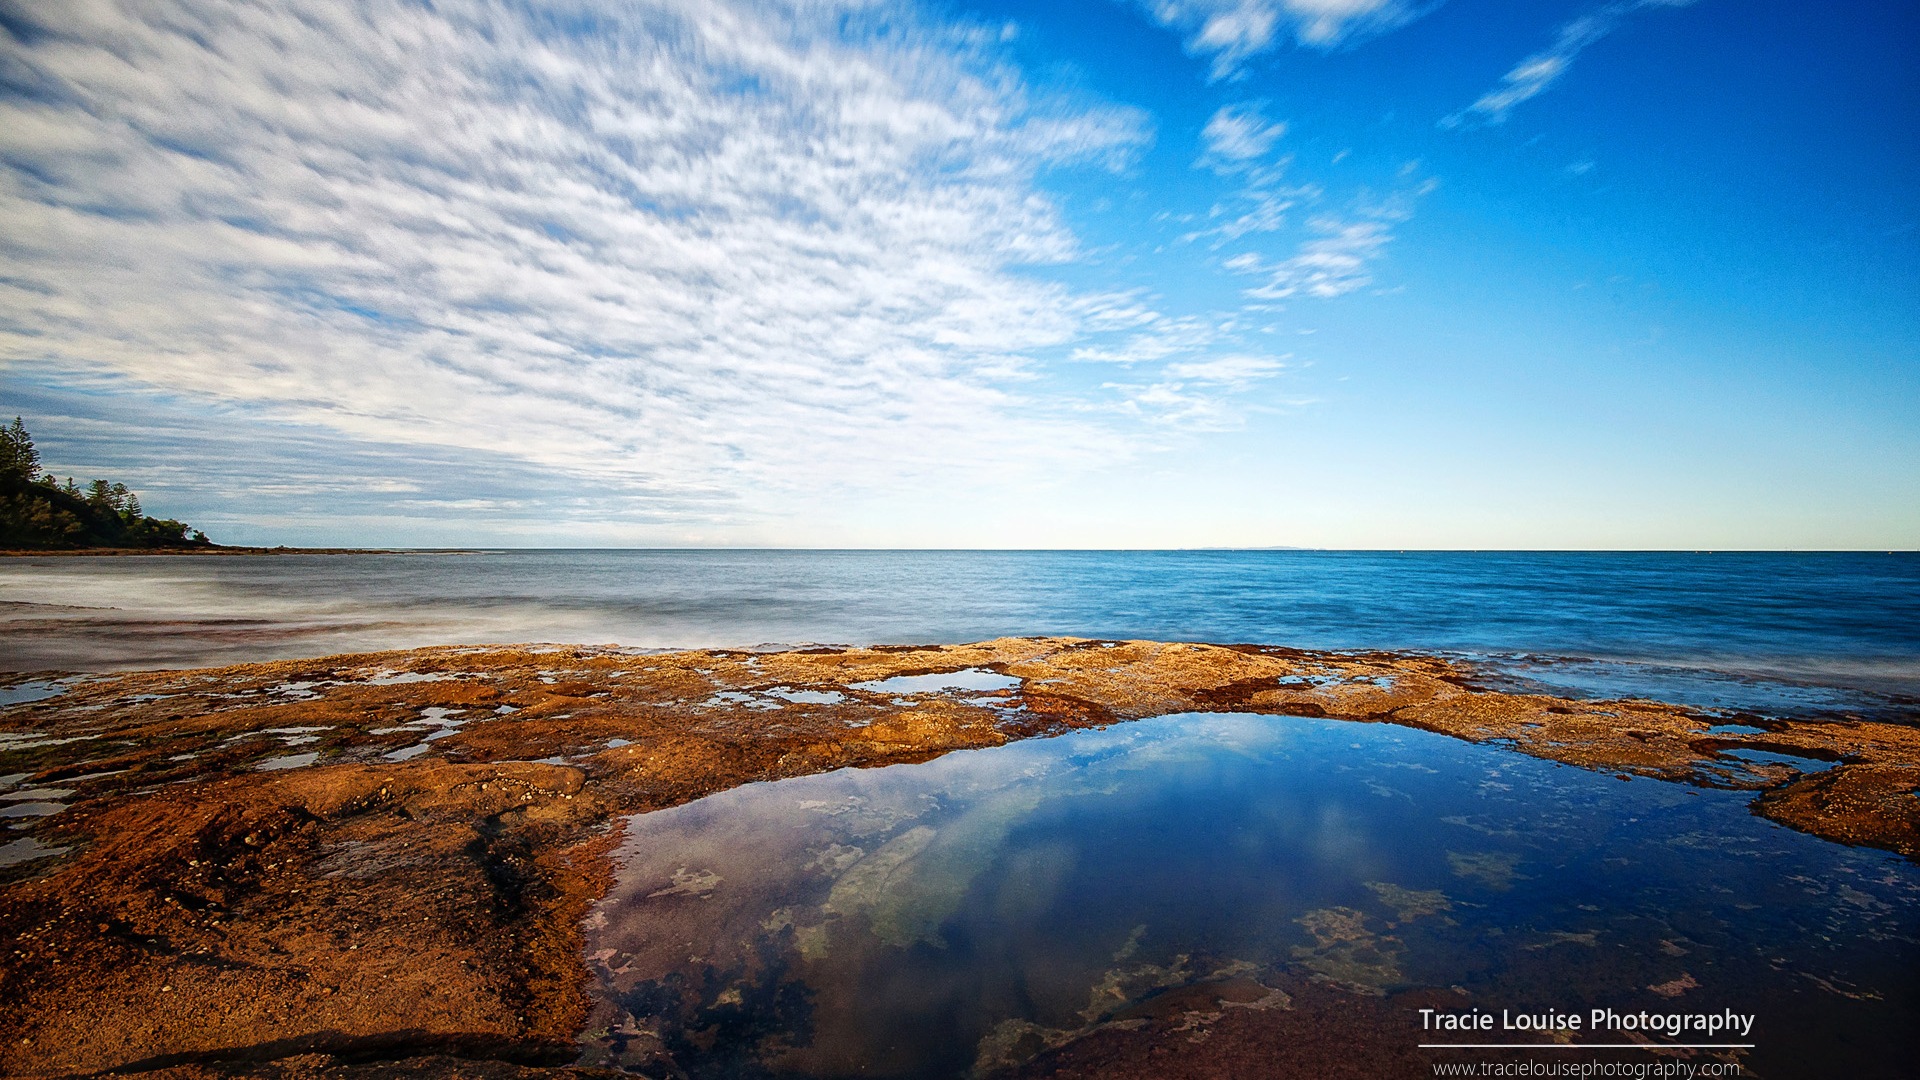 澳大利亚昆士兰州，风景秀丽，Windows 8 主题高清壁纸18 - 1920x1080